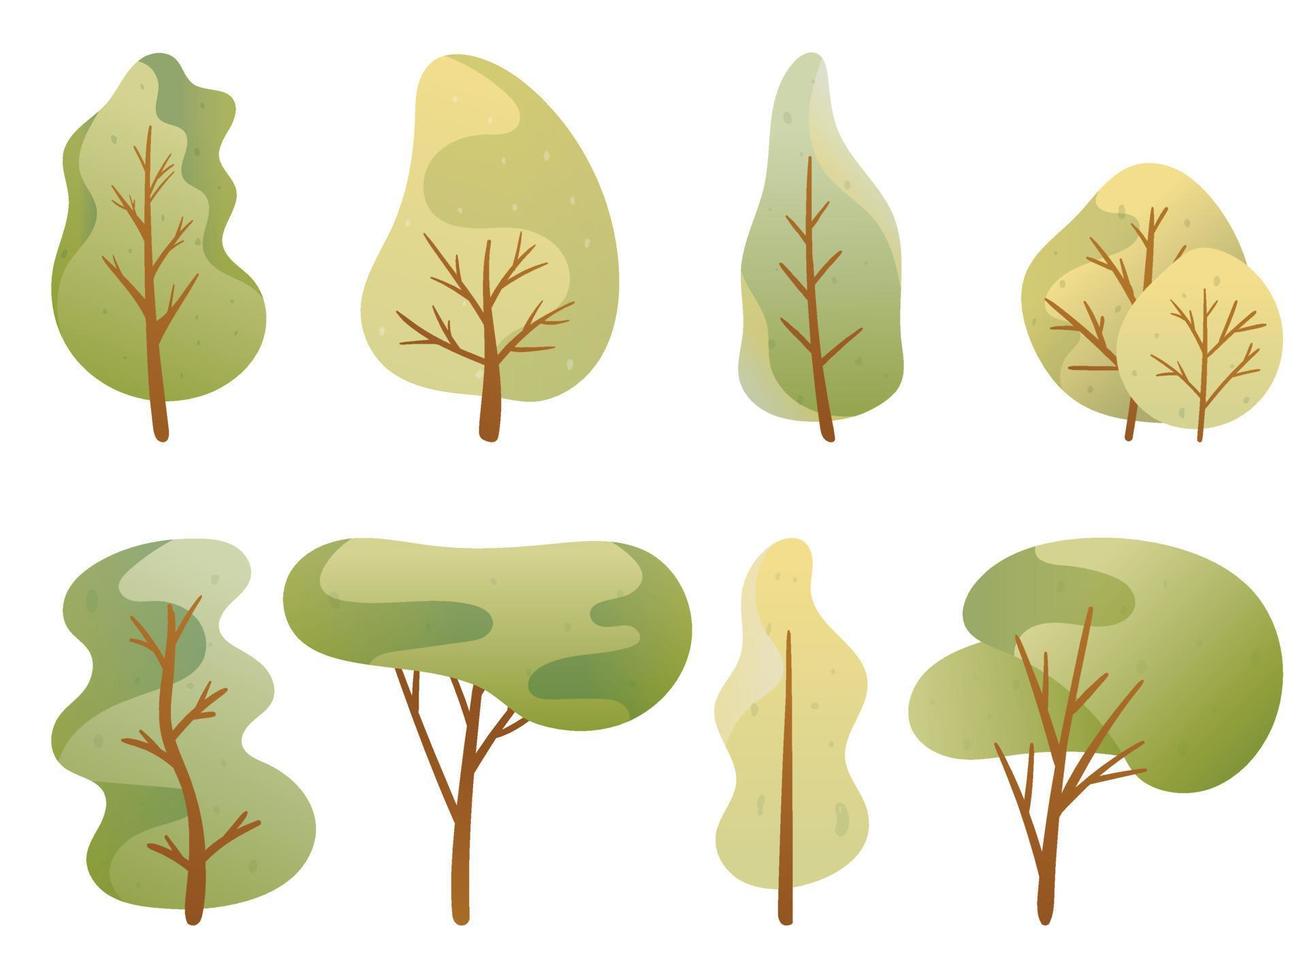 Reihe von Cartoon-Bäumen in einer grünen Palette. Crohn und Laub in verschiedenen Formen. vektor